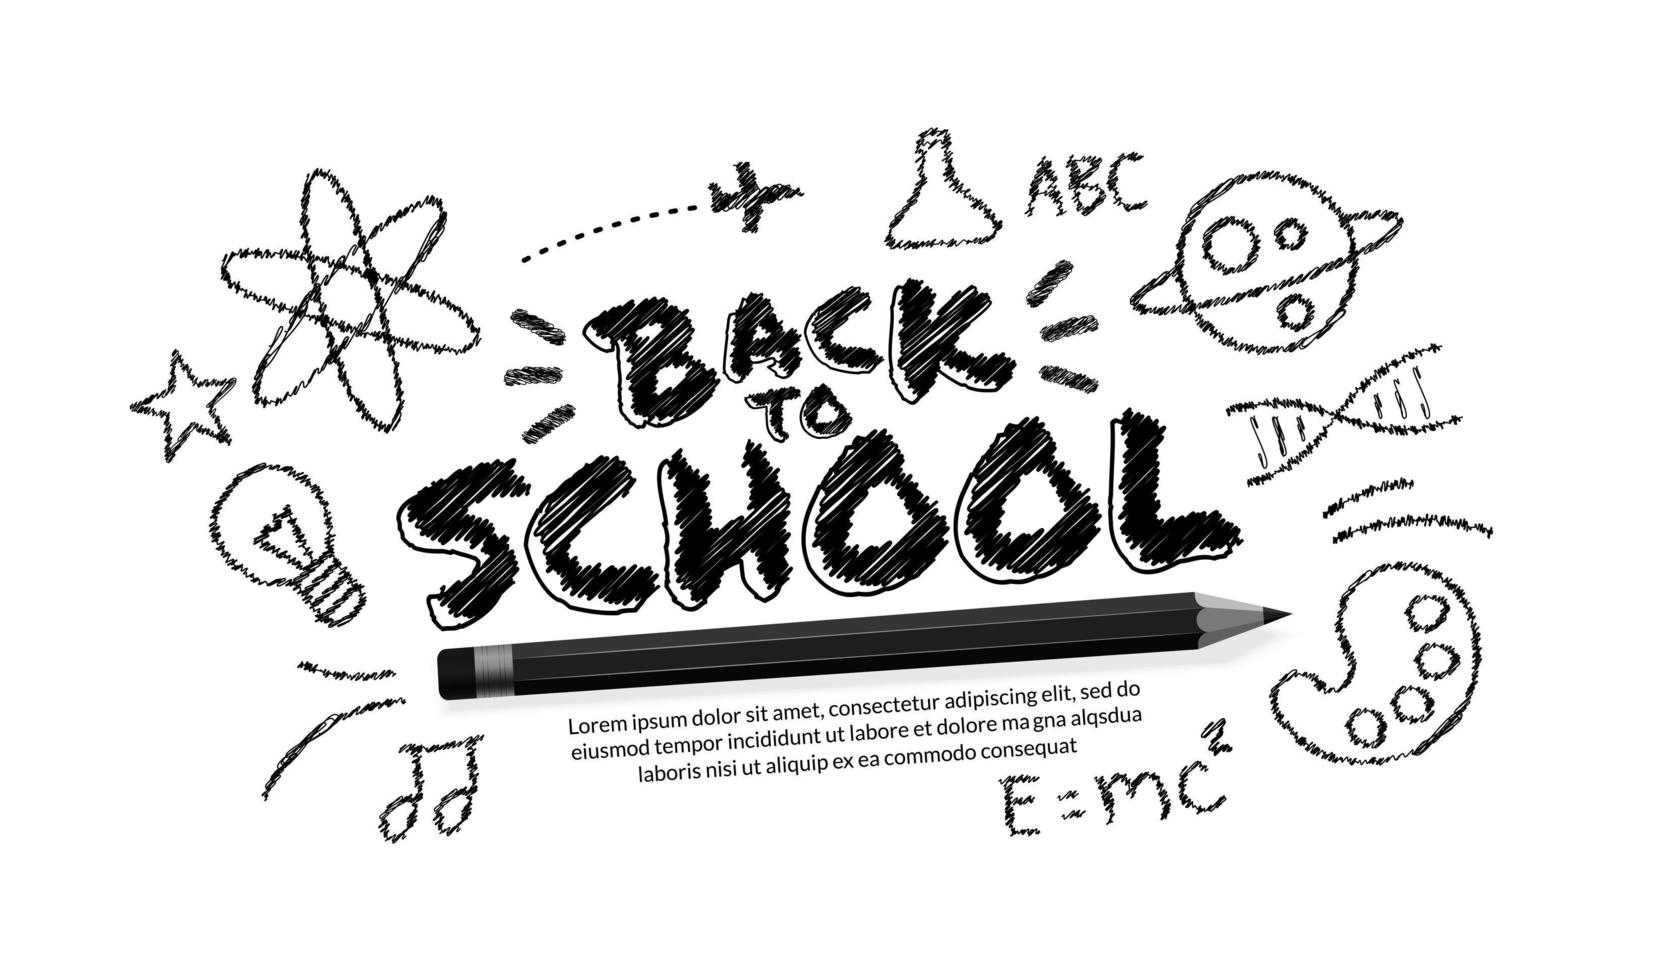 Bentornato a scuola testo con matita realistica e scarabocchi su sfondo bianco vettore